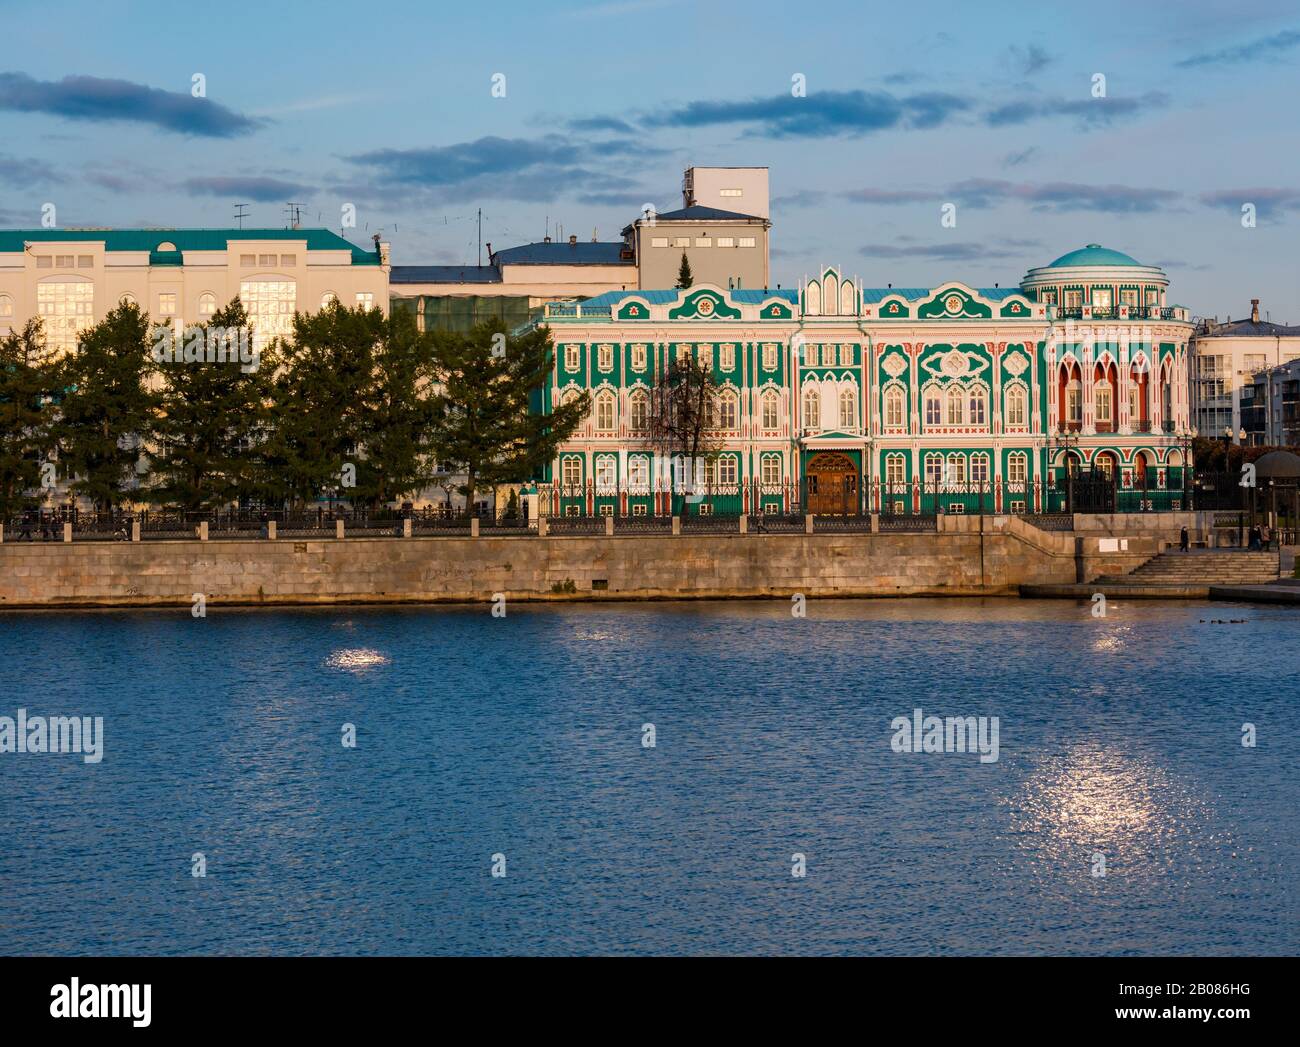 Sevastyanova House am Ufer des Iset River in der Dämmerung, Jekaterinburg, Sibirien, Russische Föderation Stockfoto